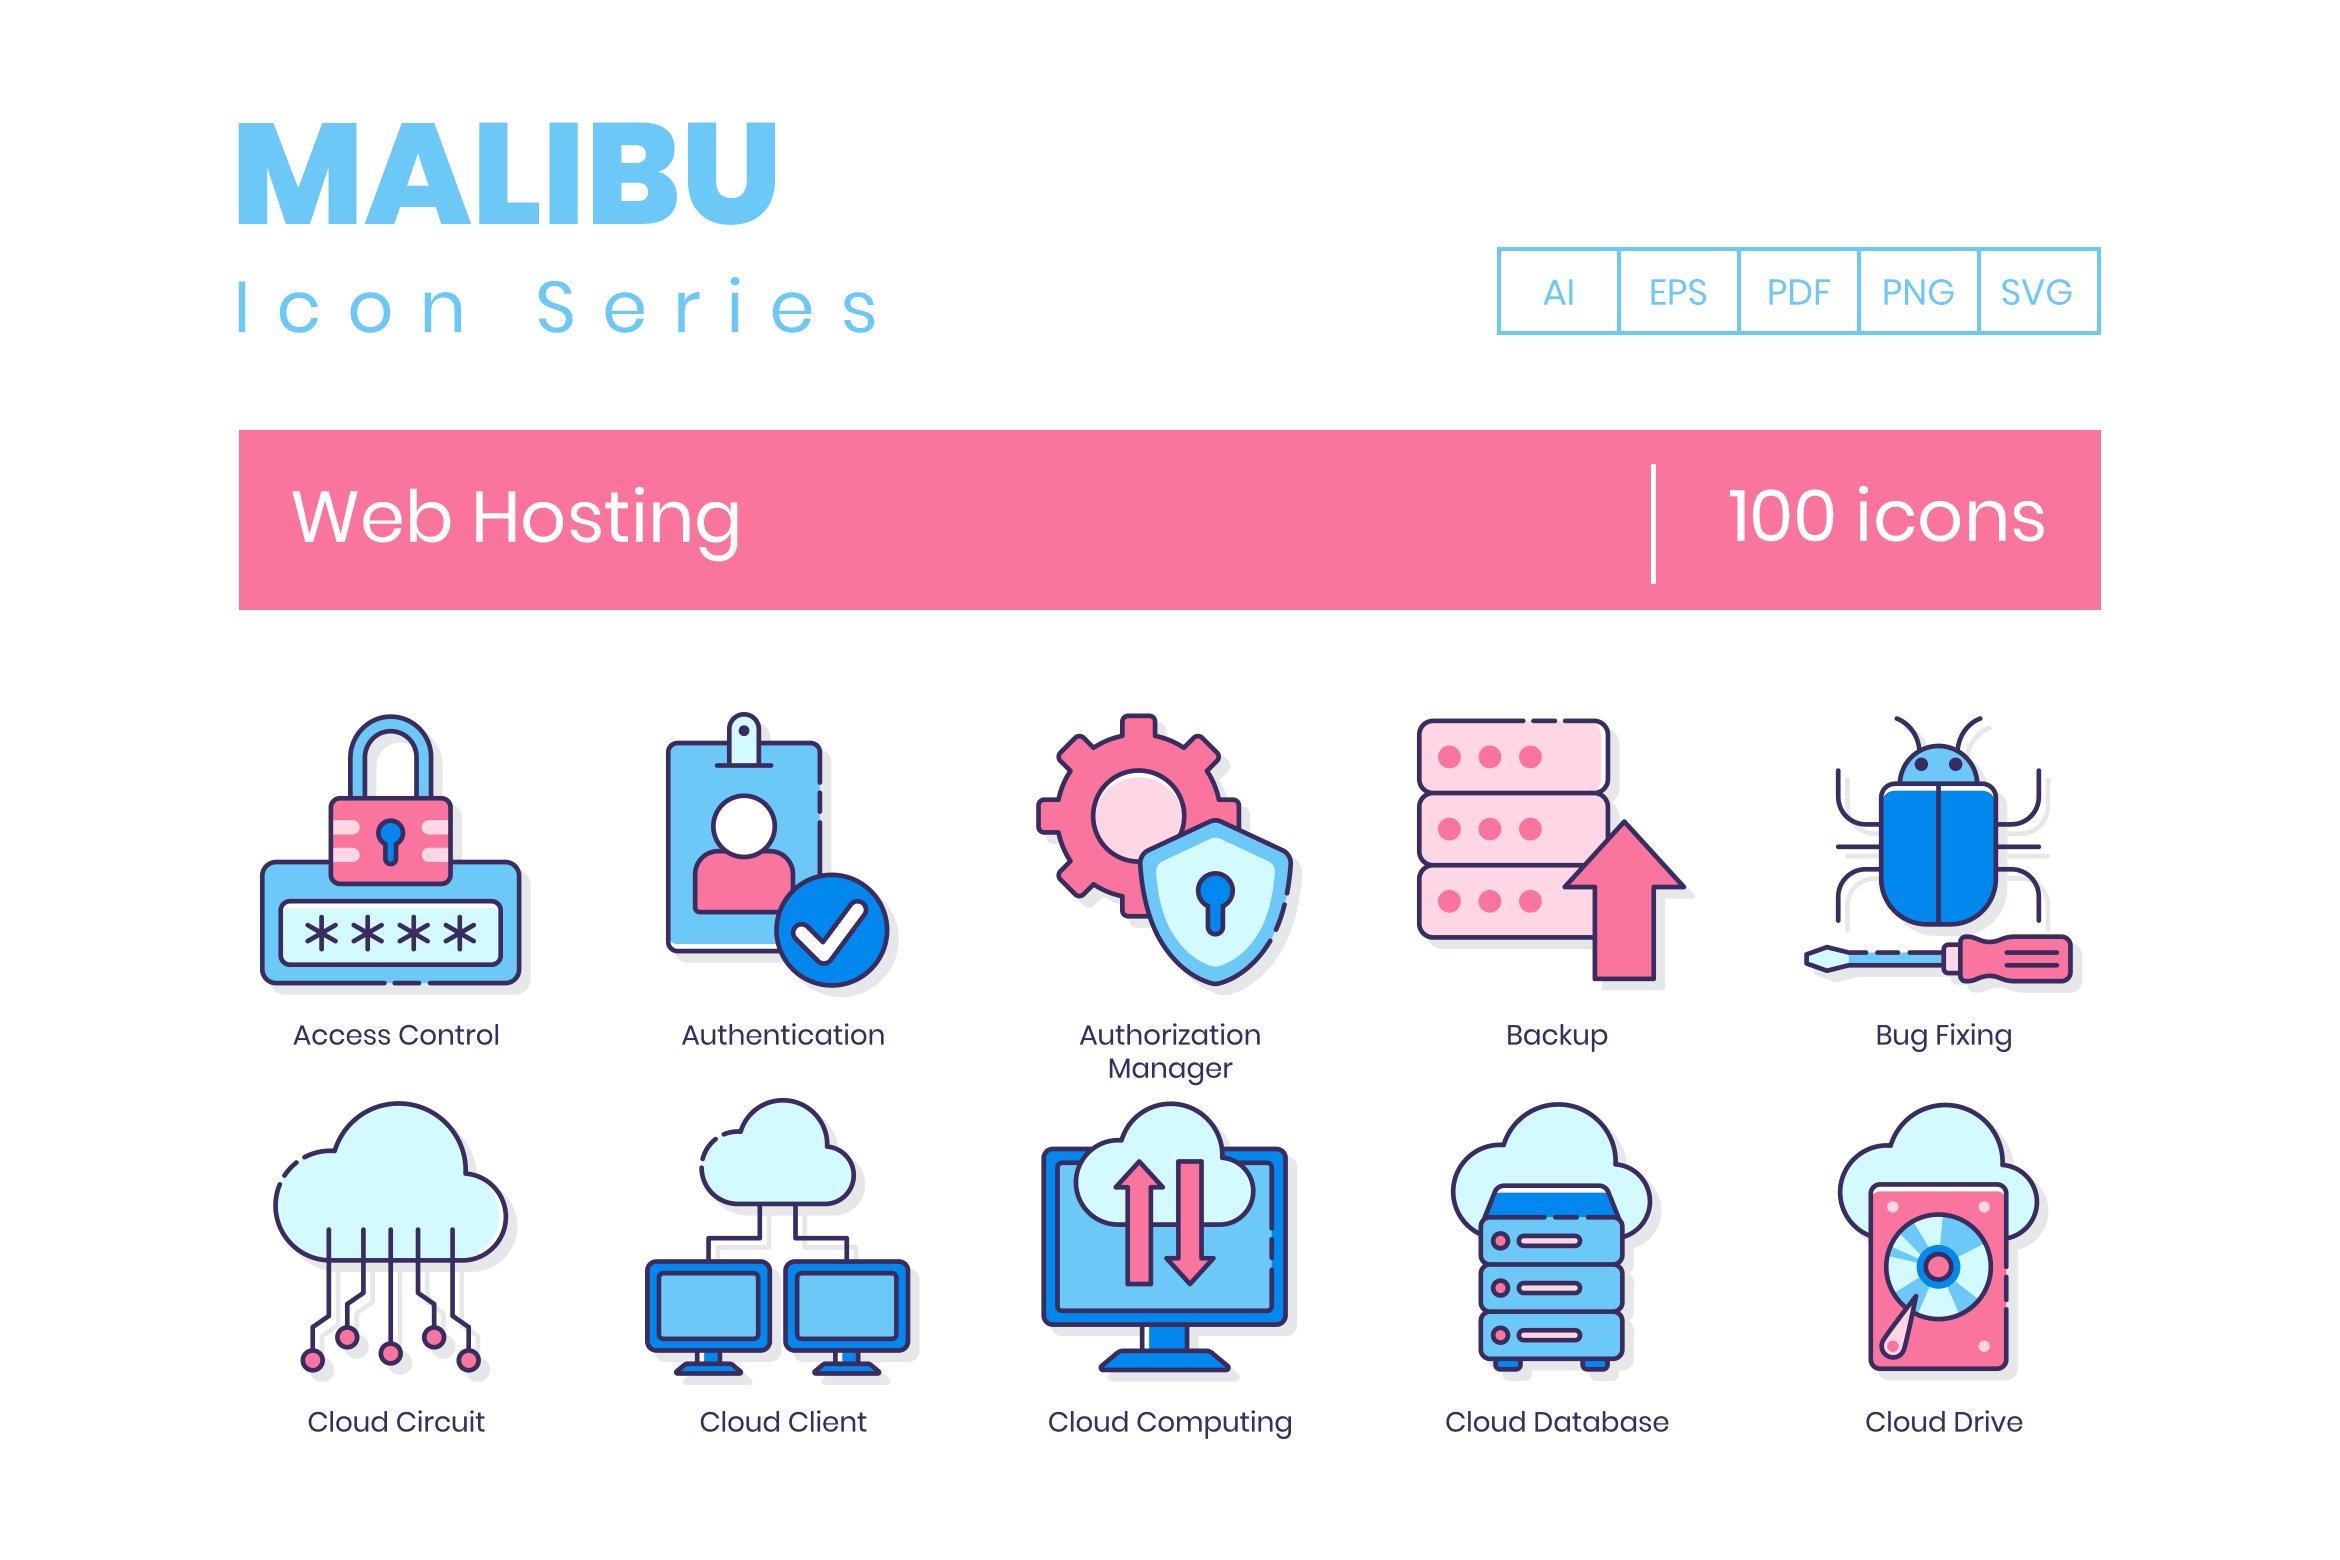 100 Web Hosting Icons - Malibu cover image.